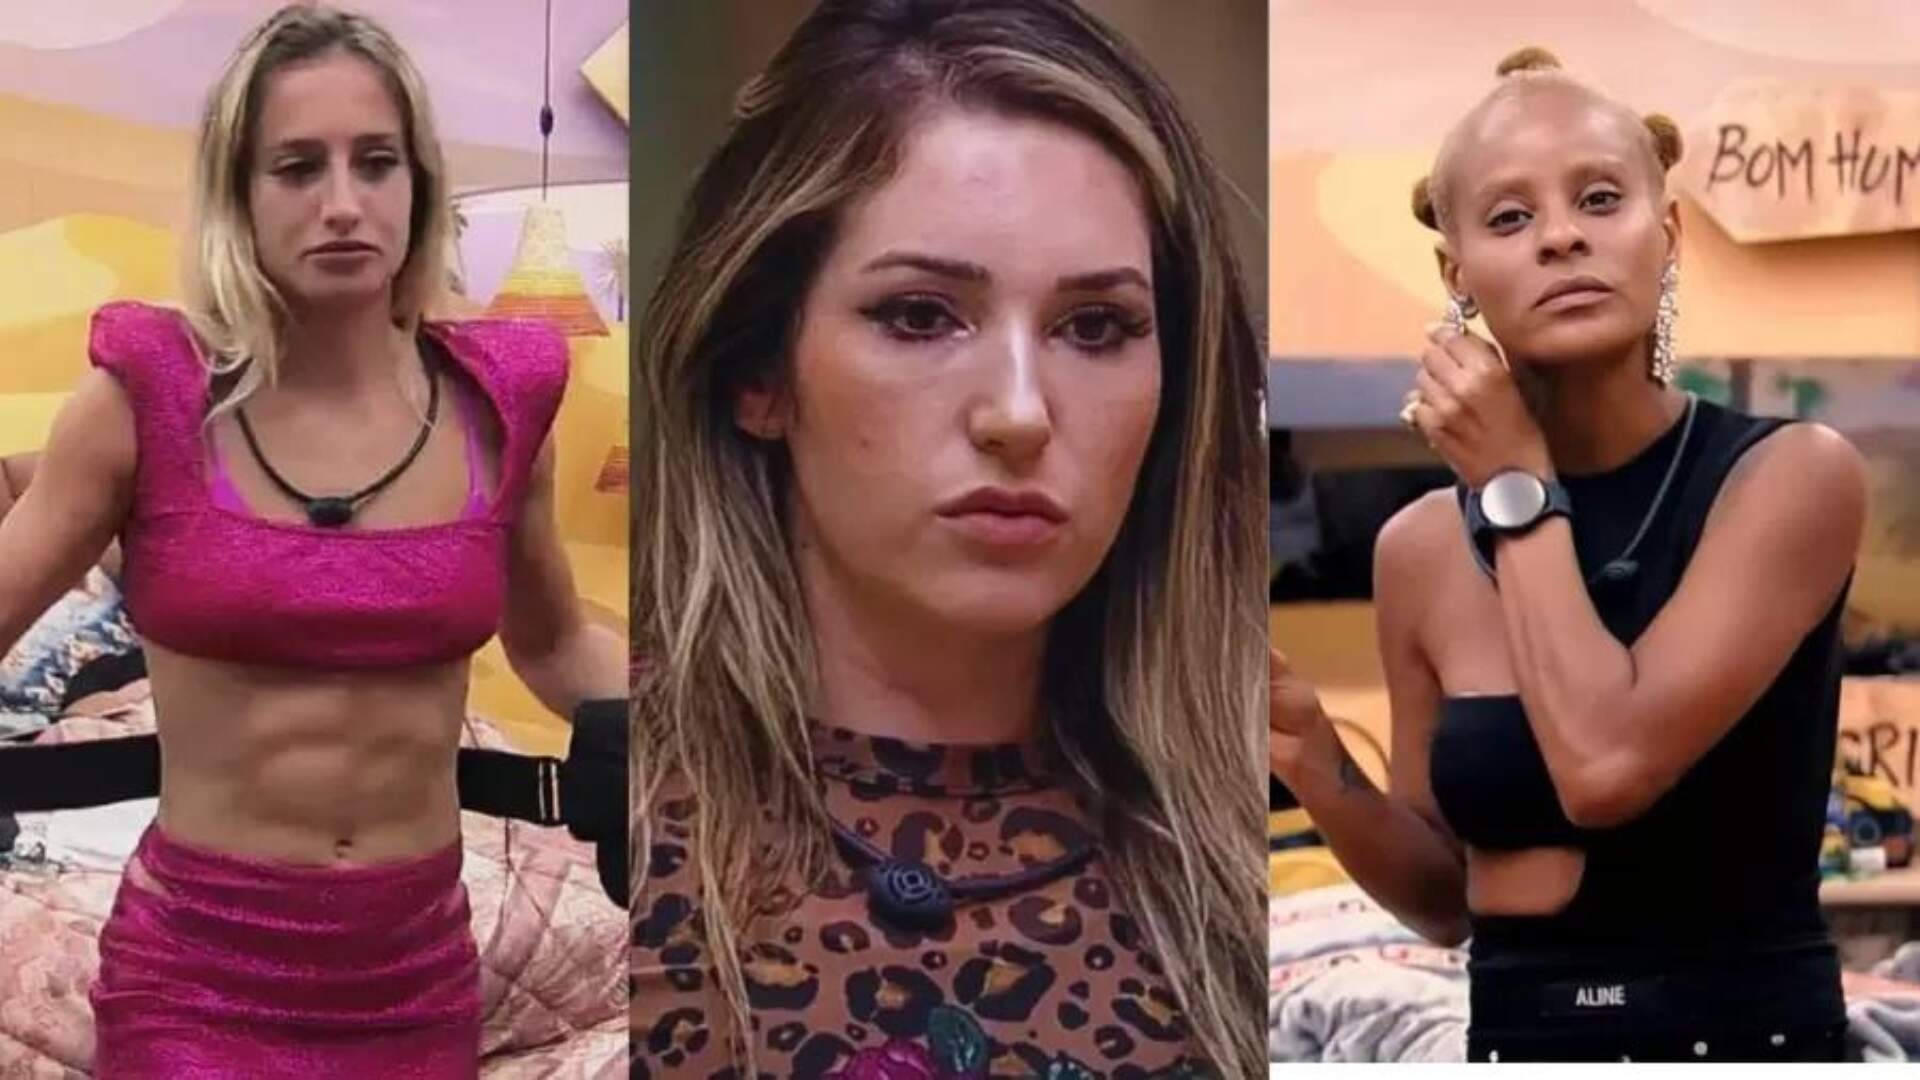 Amanda, Bruna Griphao ou Aline? Enquete revela quem será a vencedora do reality show